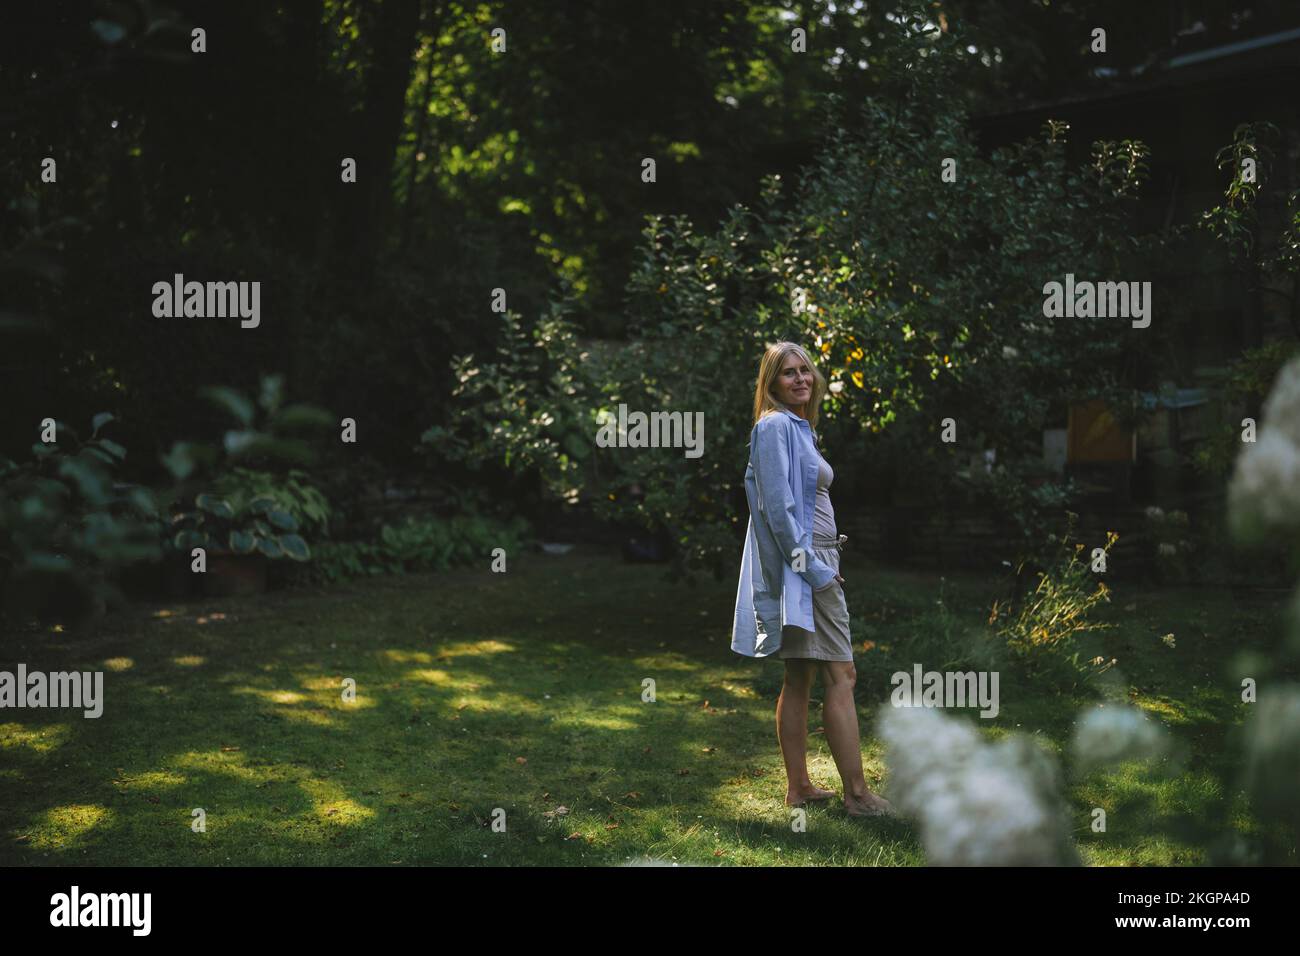 Frau in legerer Kleidung, die im Garten auf Gras steht Stockfoto